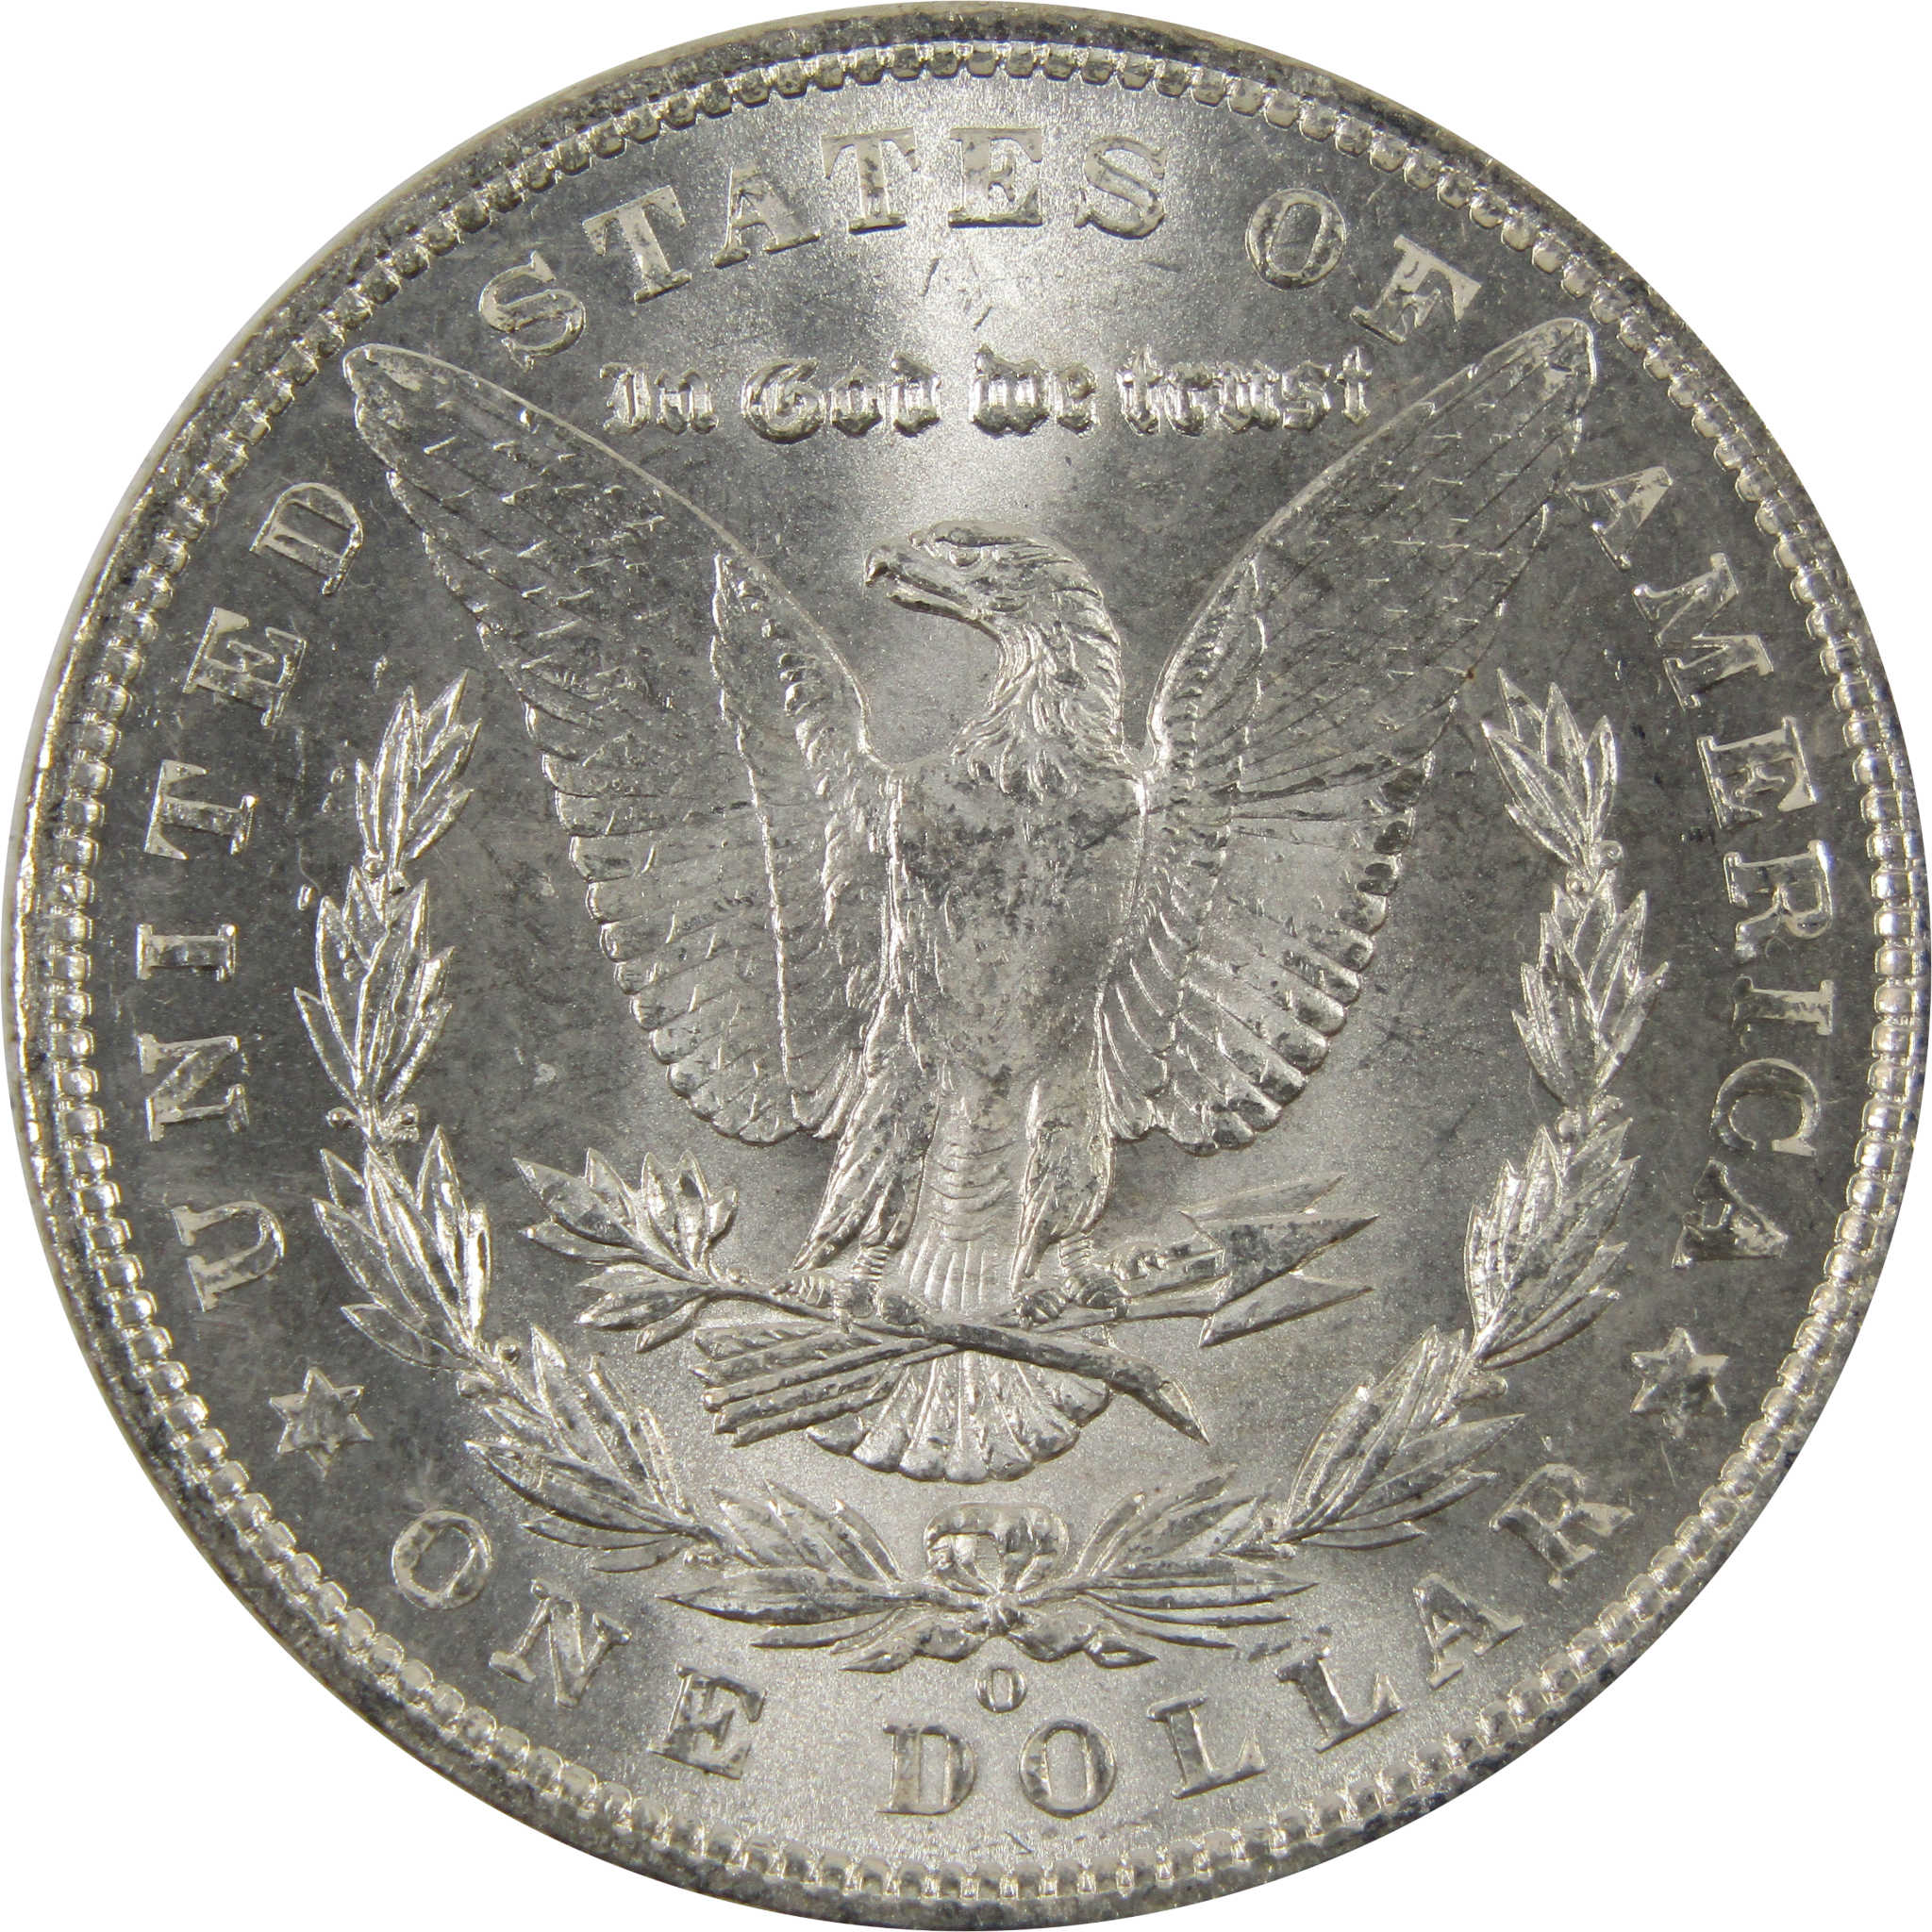 1903 O Morgan Dollar BU Choice Uncirculated 90% Silver $1 SKU:I7509 - Morgan coin - Morgan silver dollar - Morgan silver dollar for sale - Profile Coins &amp; Collectibles